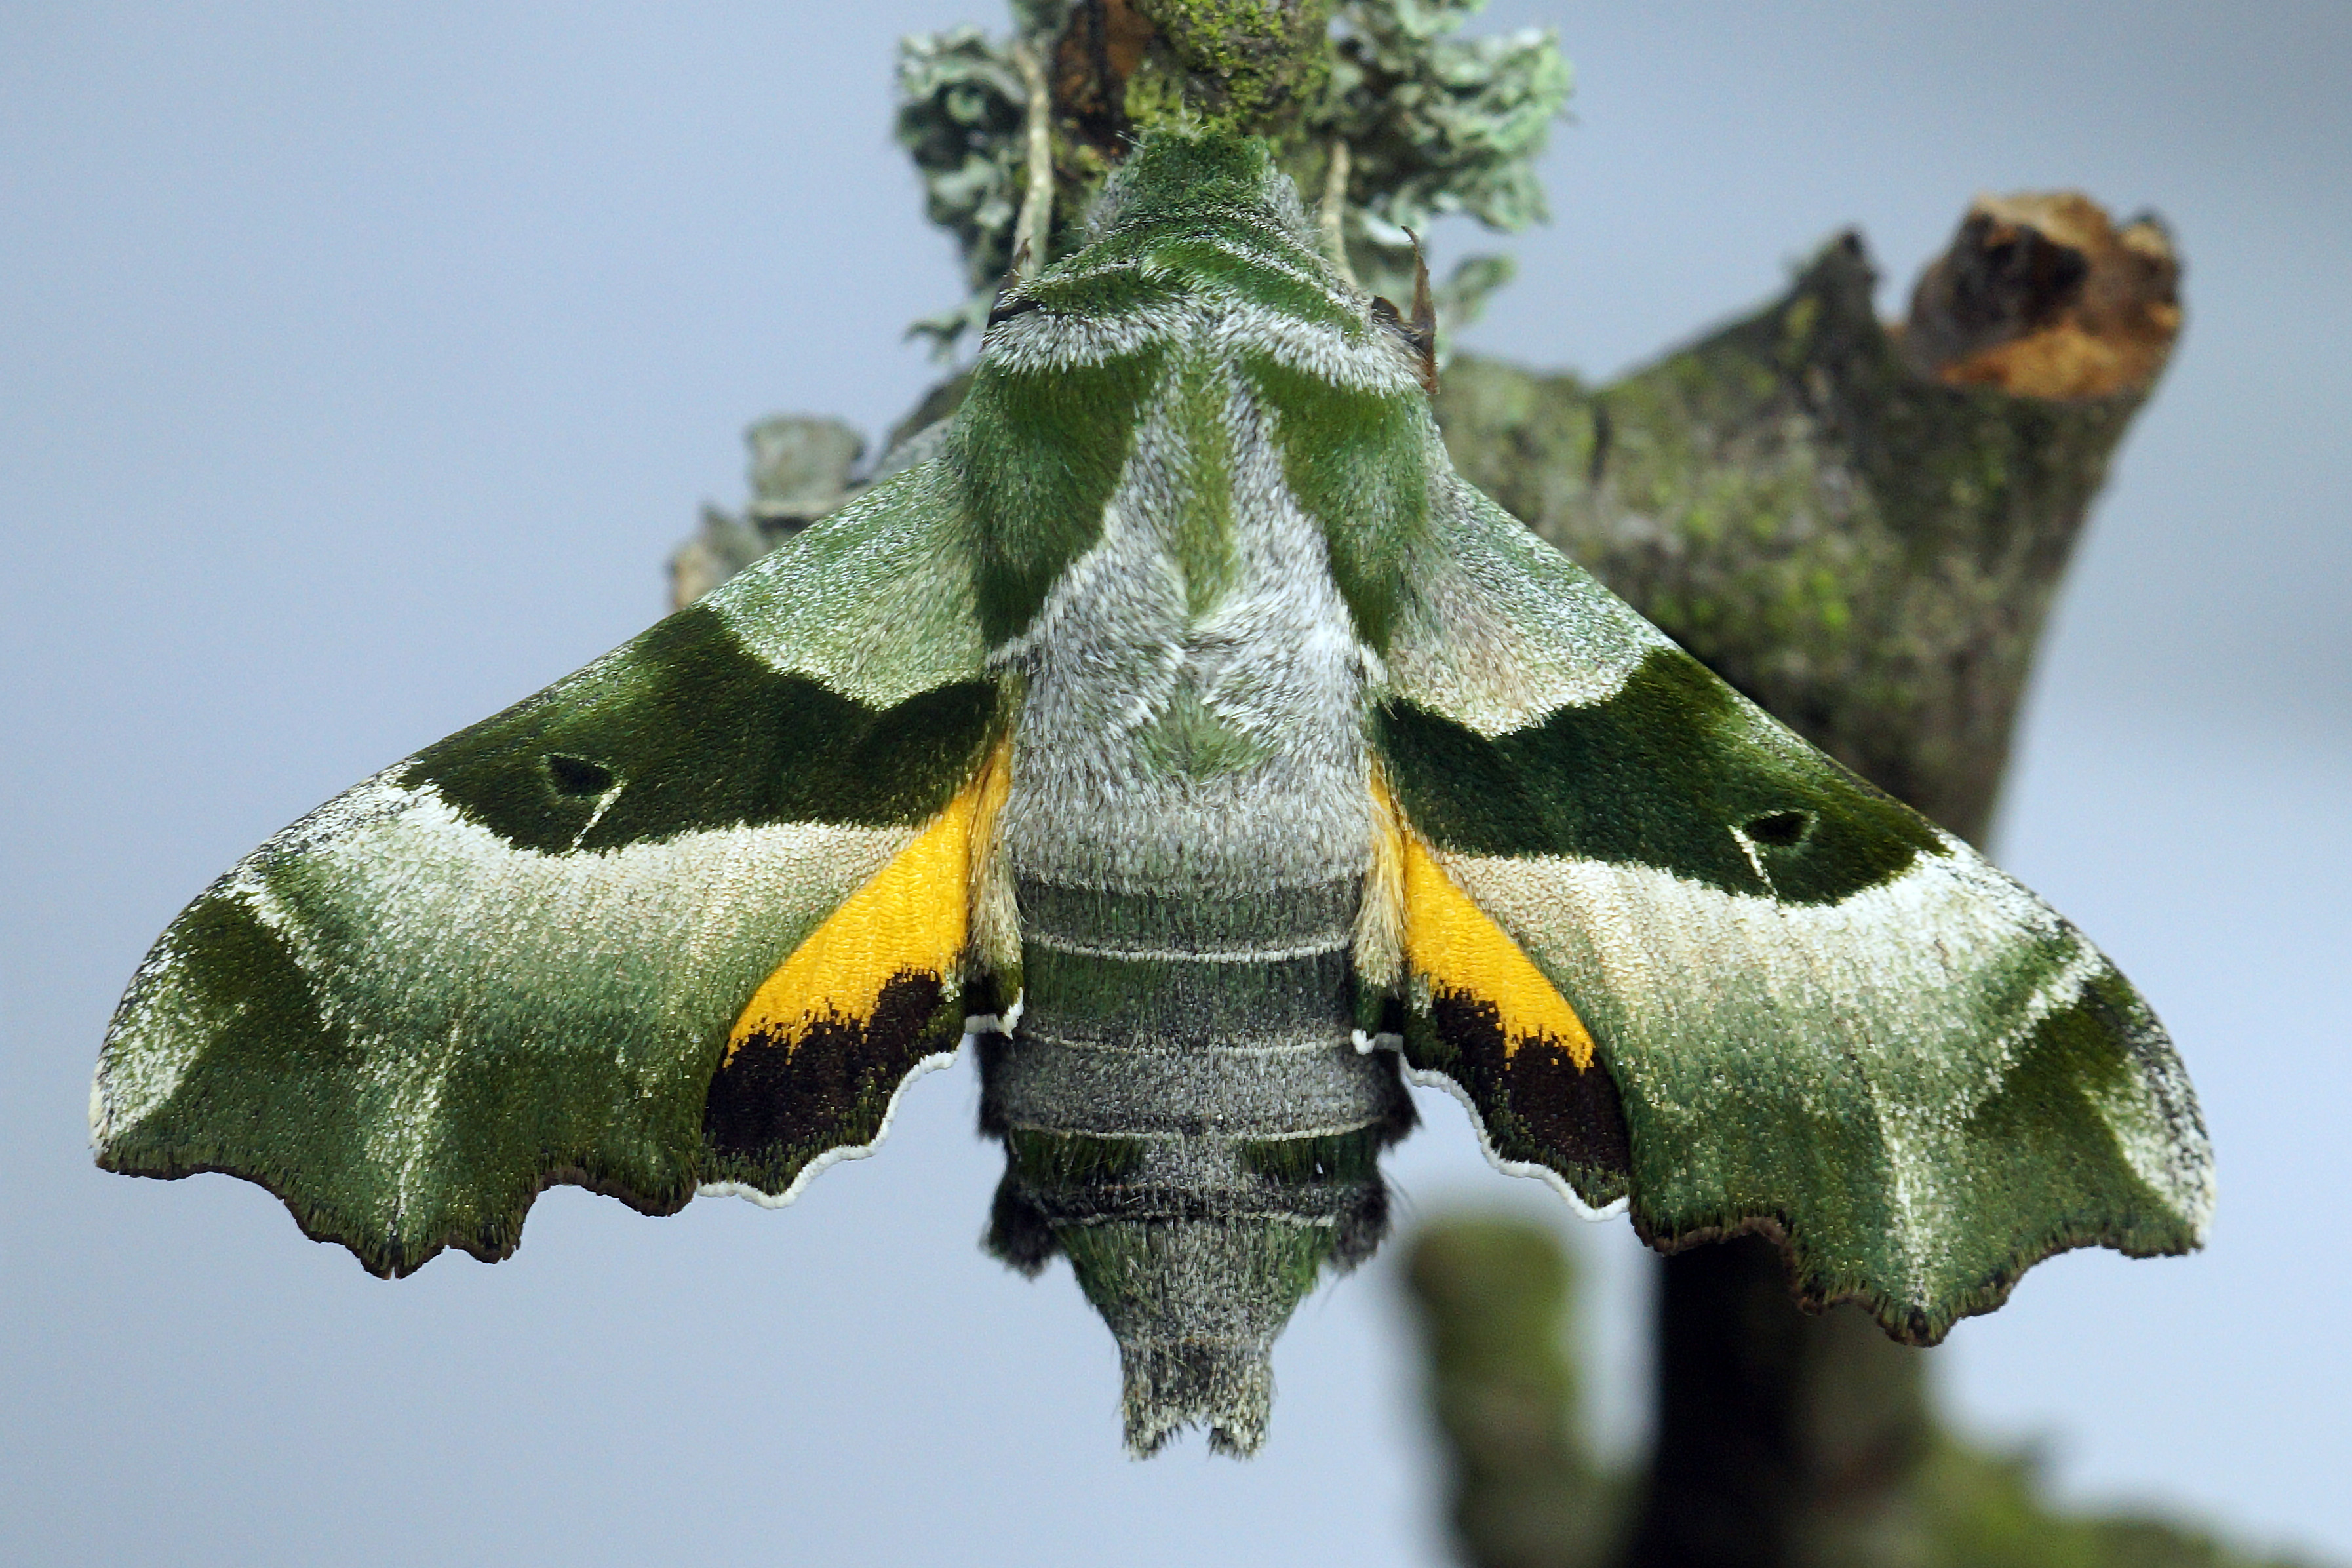 Der Falter ist mit einer Flügelspannweite von 37 bis 45 Millimeter mittelgroß. Die Oberseite der Vorderflügel ist graugrün, wobei die deutlich ausgeprägte Mittelbinde dunkelgrün gefärbt ist. Der ganze Körper ist in verschiedenen Grüntönen gehalten und die Flügelränder sind stark gezackt. Nur die Hinterflügel sind auffallend orange mit einer schwarzen Saumbinde. Die Unterseite ist olivgrün und besitzt eine weiße Mittelbinde. Die Fühler sind schwarz mit weißen Spitzen. 